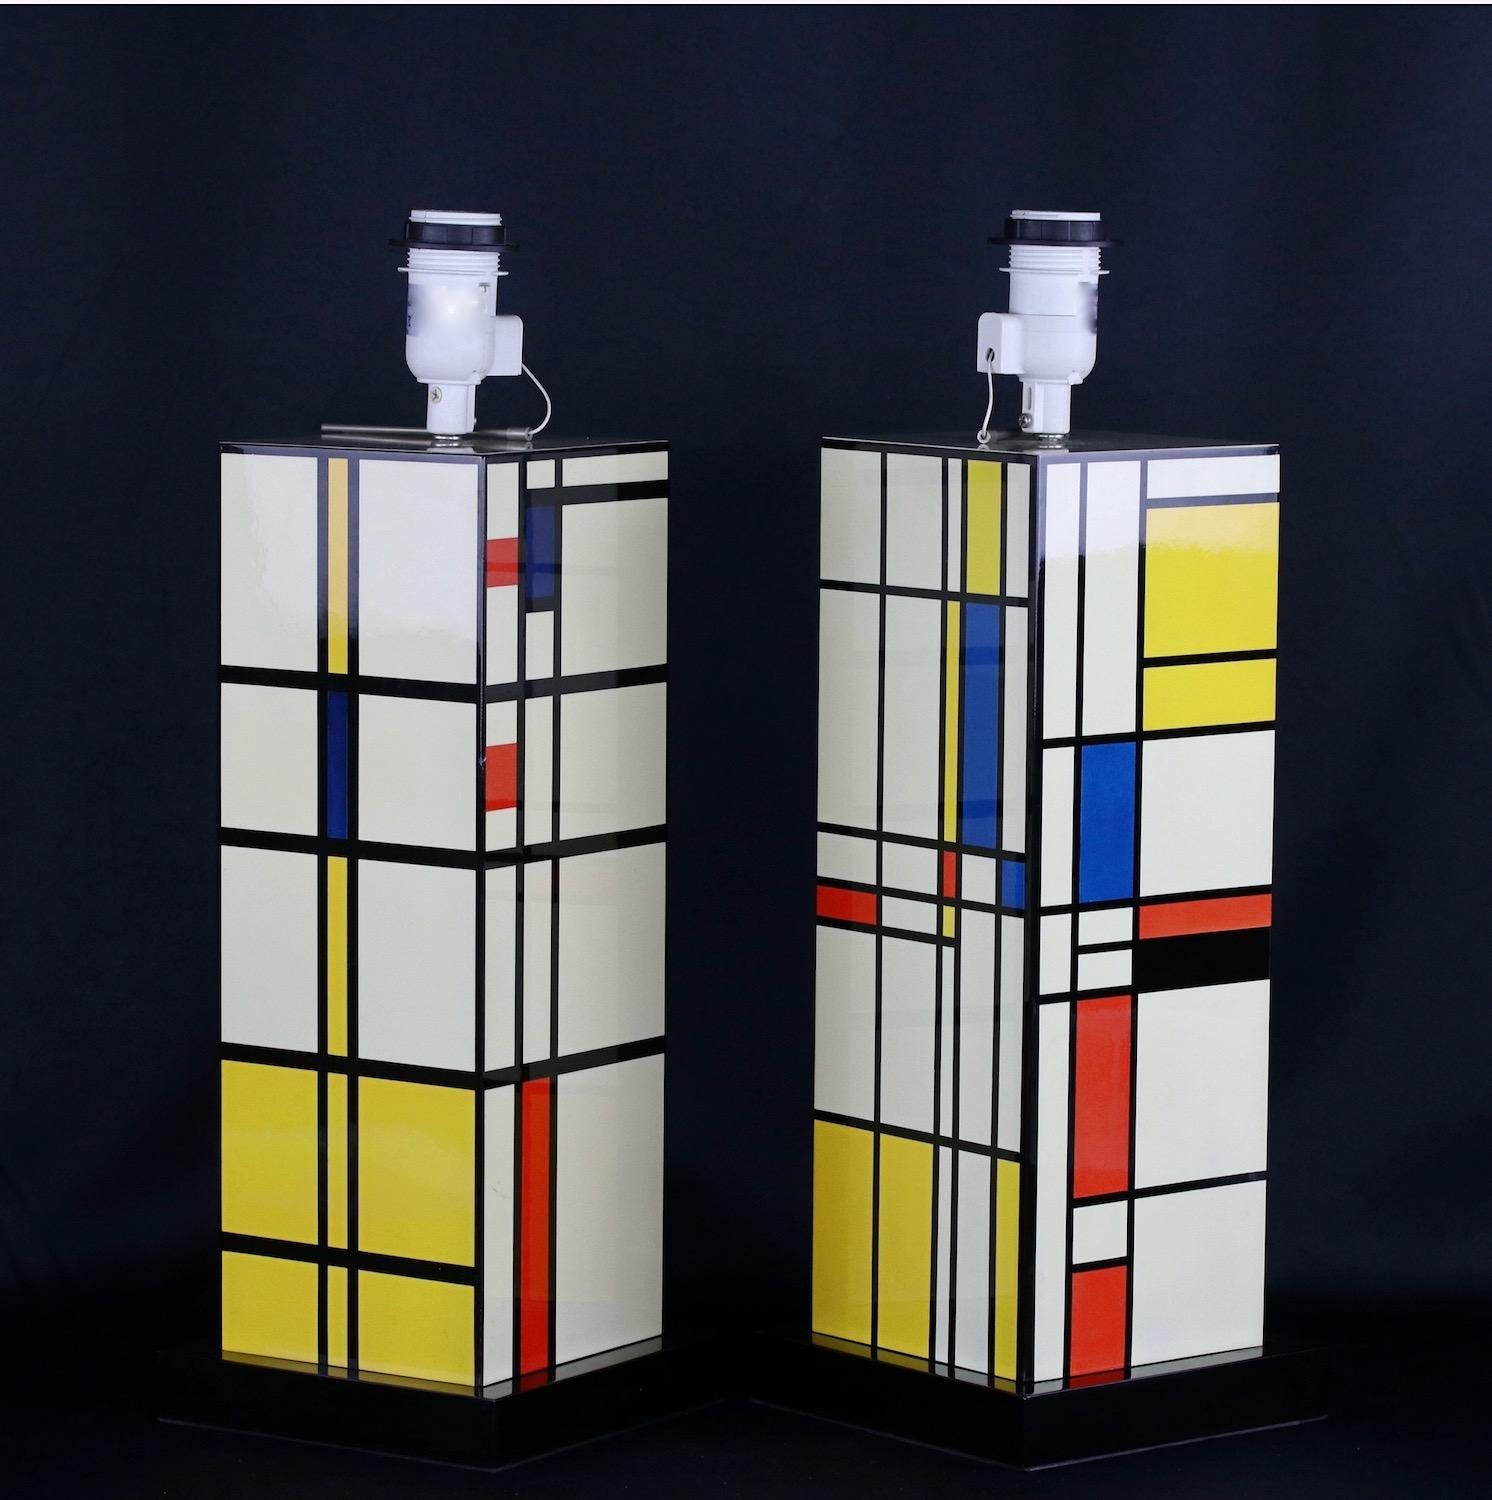 Zwei dekorative Kompositlampen im Stil von Piet Mondrian aus dem 20. Zweite Hälfte des 20. Jahrhunderts. Wahrscheinlich 1960er Jahre. Mit Schattierungen. 
Die Höhe 49cm ist ohne Schirm.

Piet Mondrian (1872-1944), geboren in den Niederlanden und